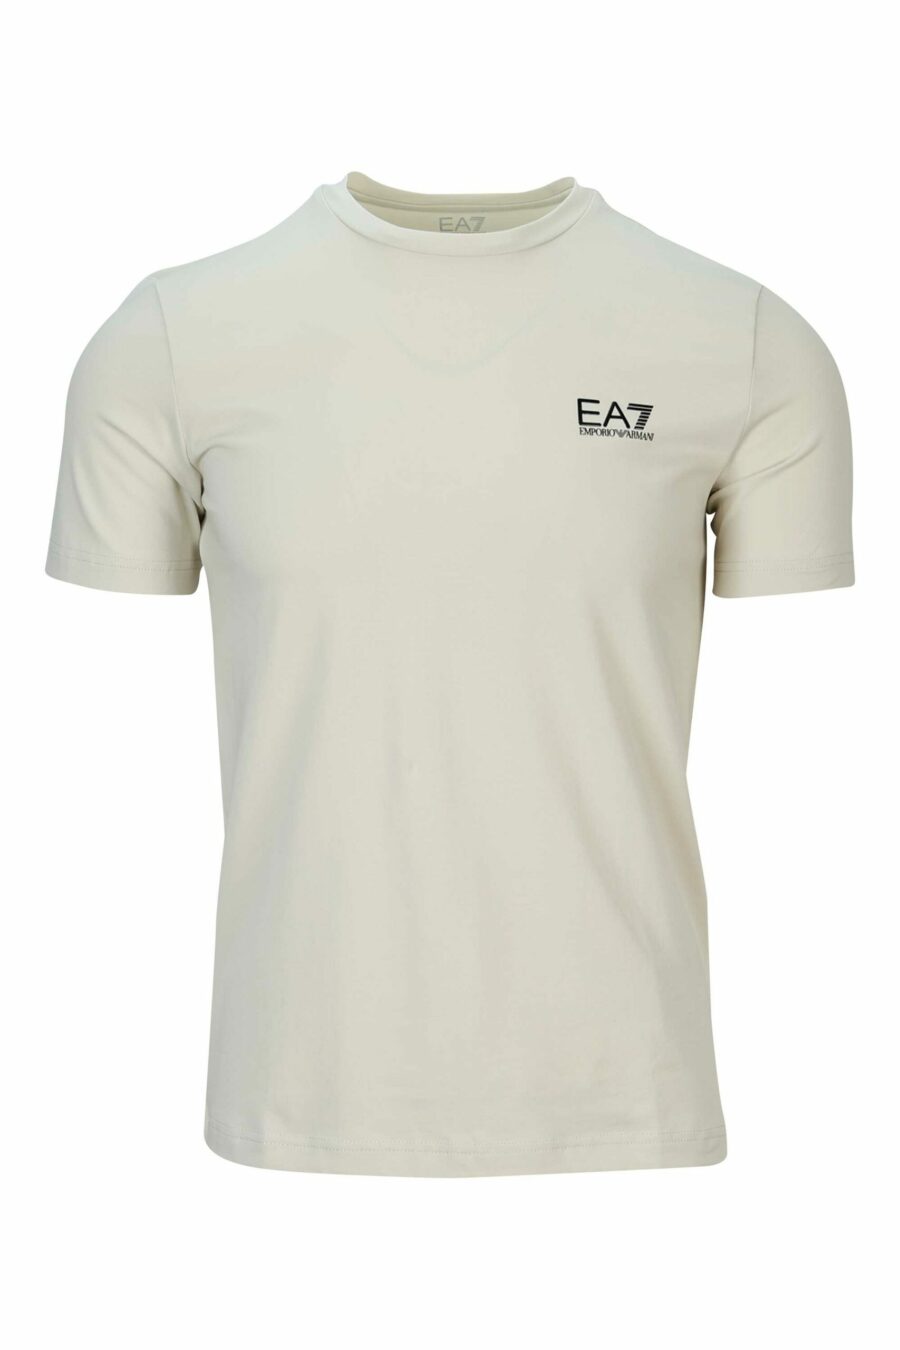 T-shirt beige avec logo "lux identity" en caoutchouc - 8058947457700